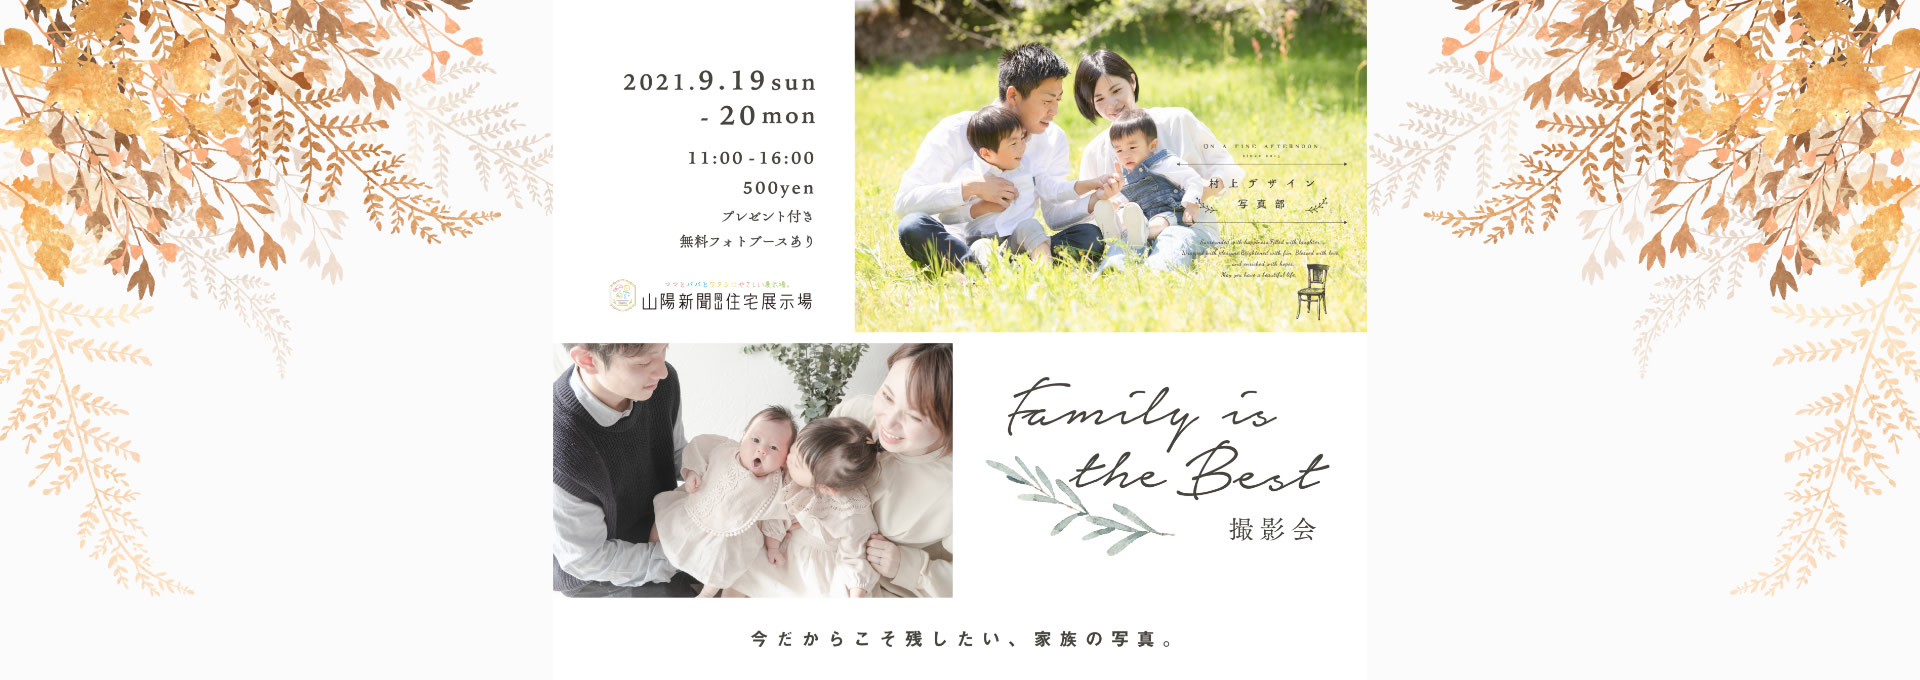 Family is the Best 撮影会 2021.9.19 sun - 20 mon 11:00-16:00